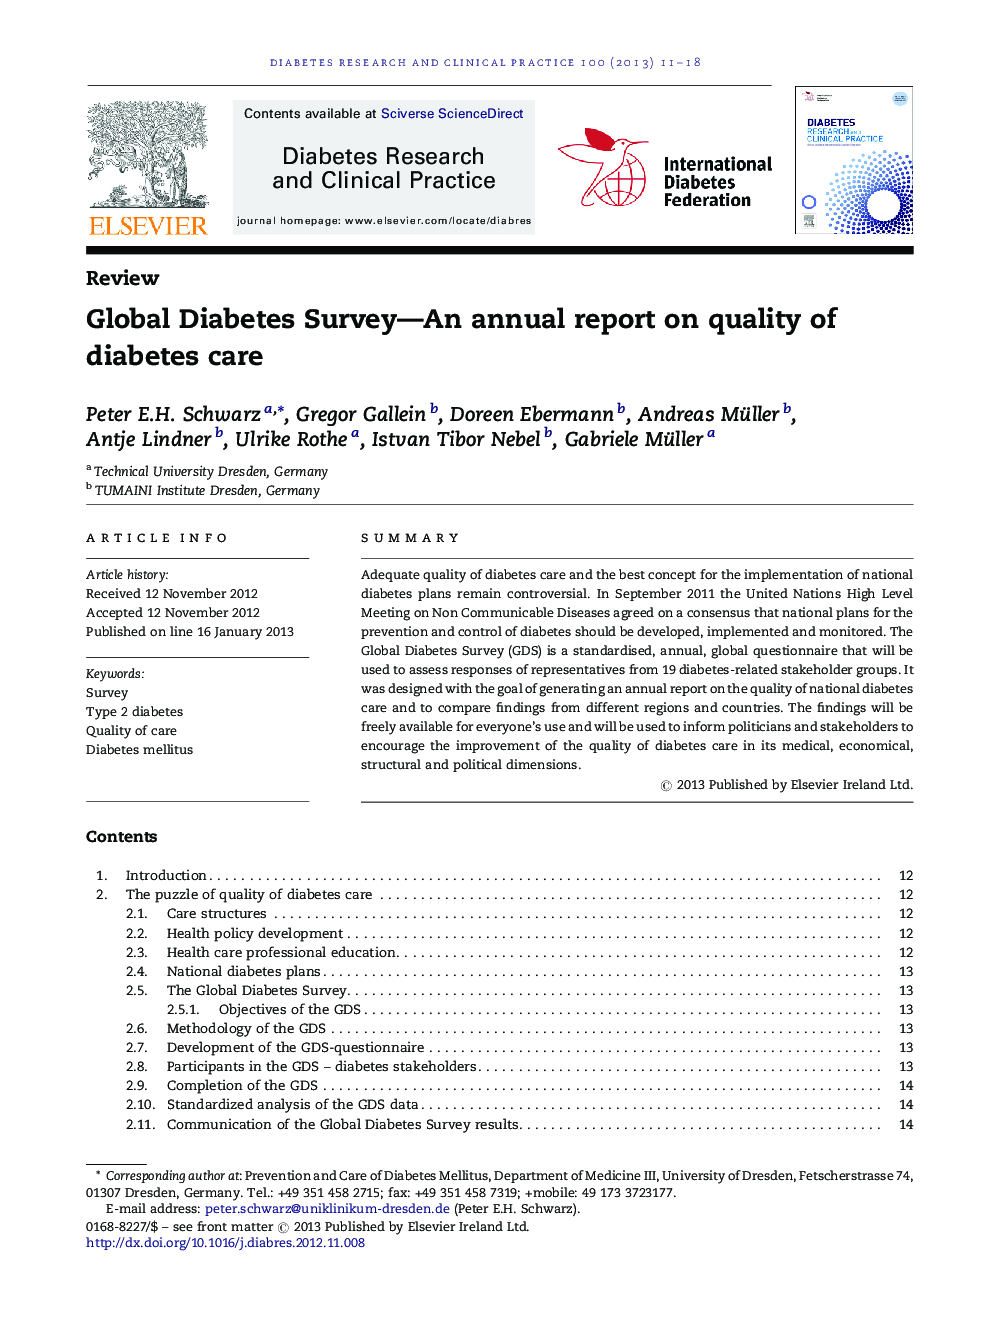 بررسی دیابت جهانی - گزارش سالانه در مورد کیفیت مراقبت از دیابت 